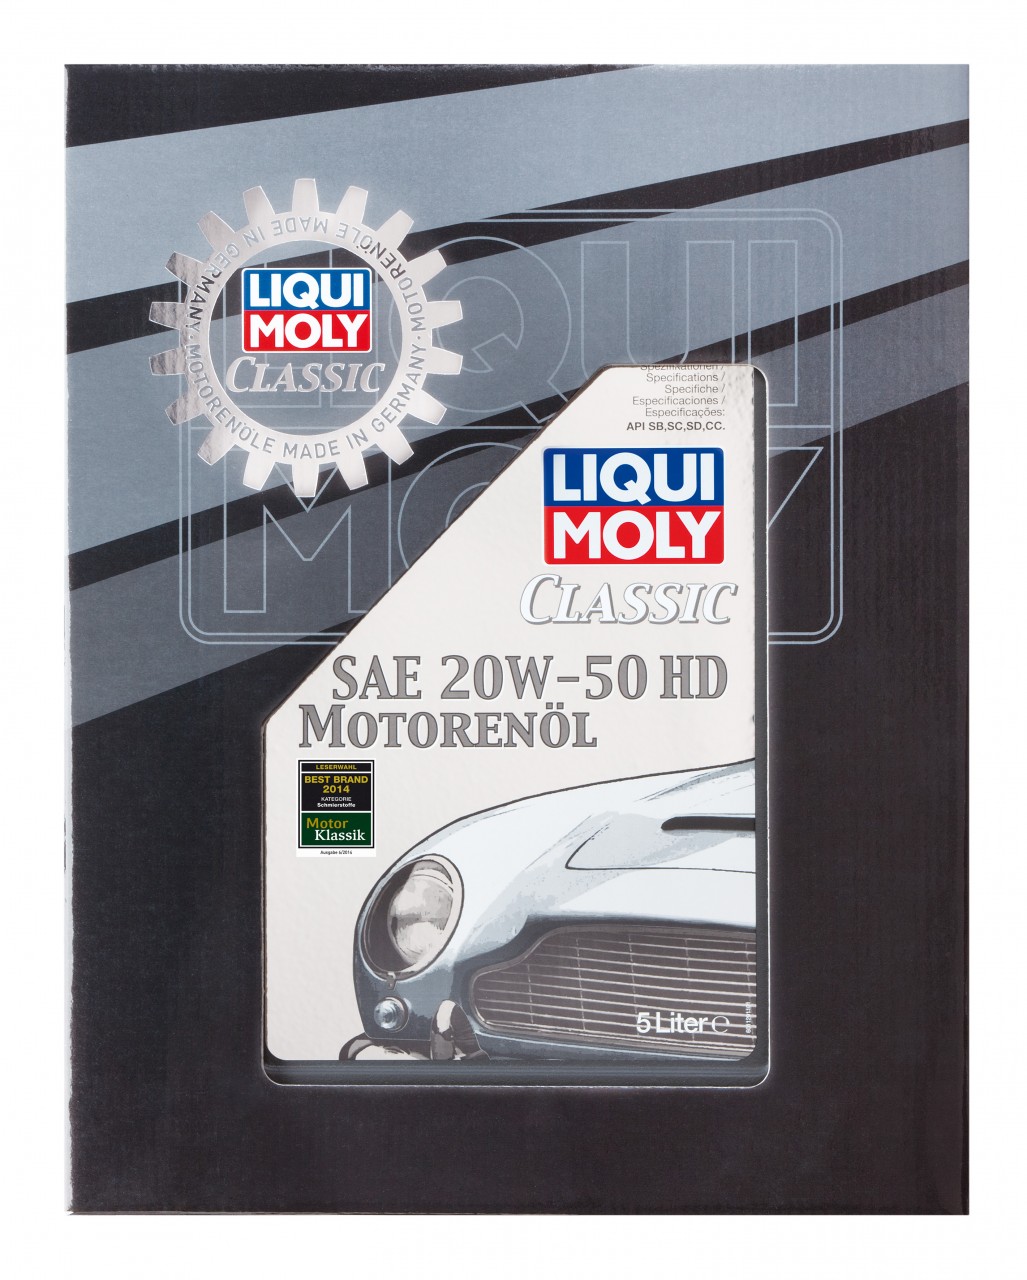 Maakte zich klaar Fervent Het beste Liqui Moly Classic Motor Oil SAE 20W-50 HD 5 Liter - De Olie Concurrent